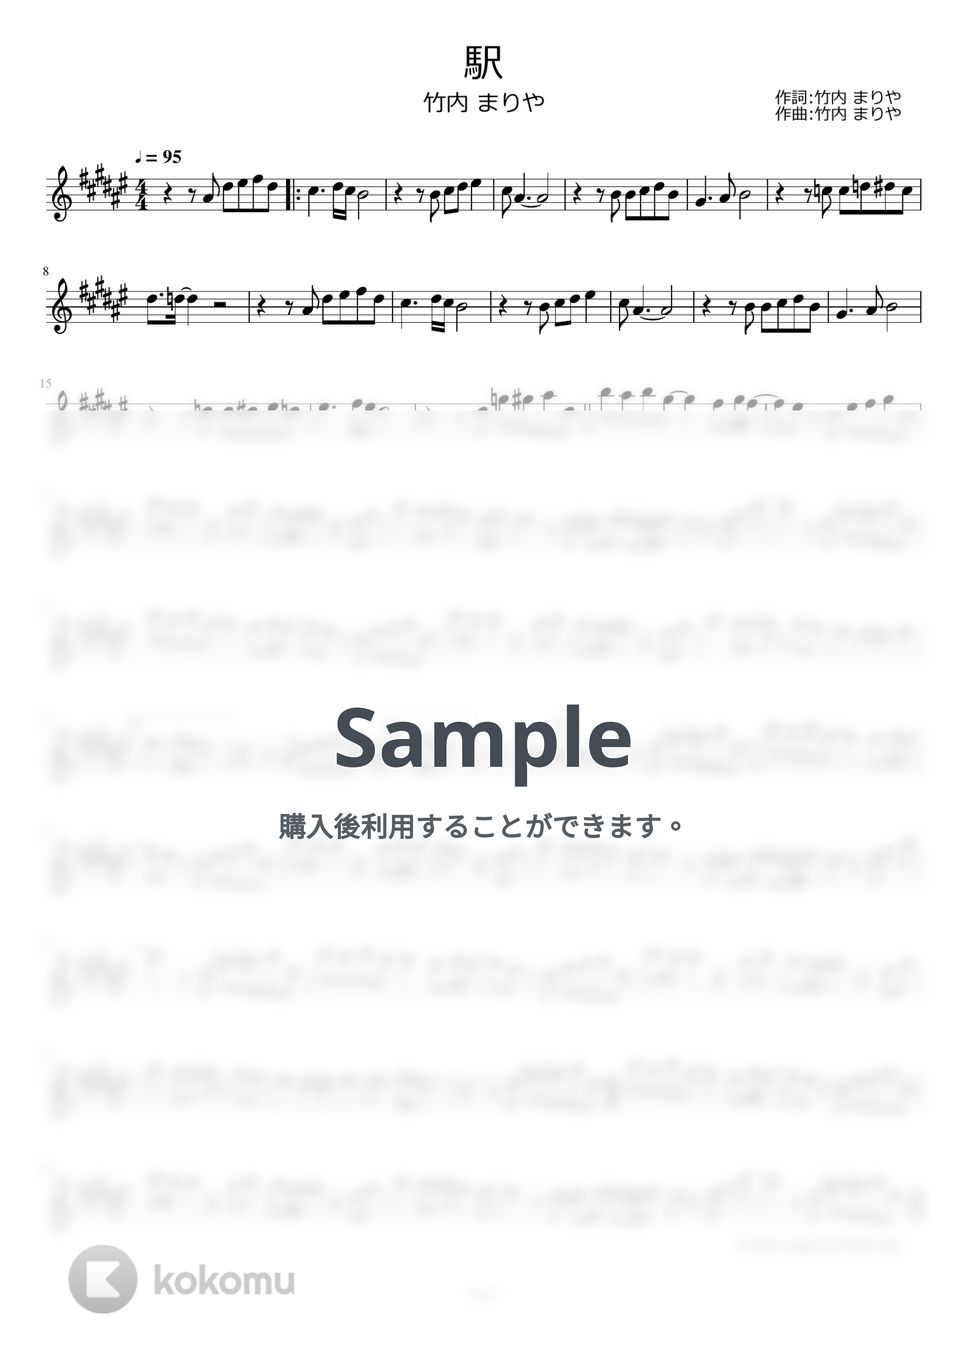 竹内まりや - 駅 by ayako music school